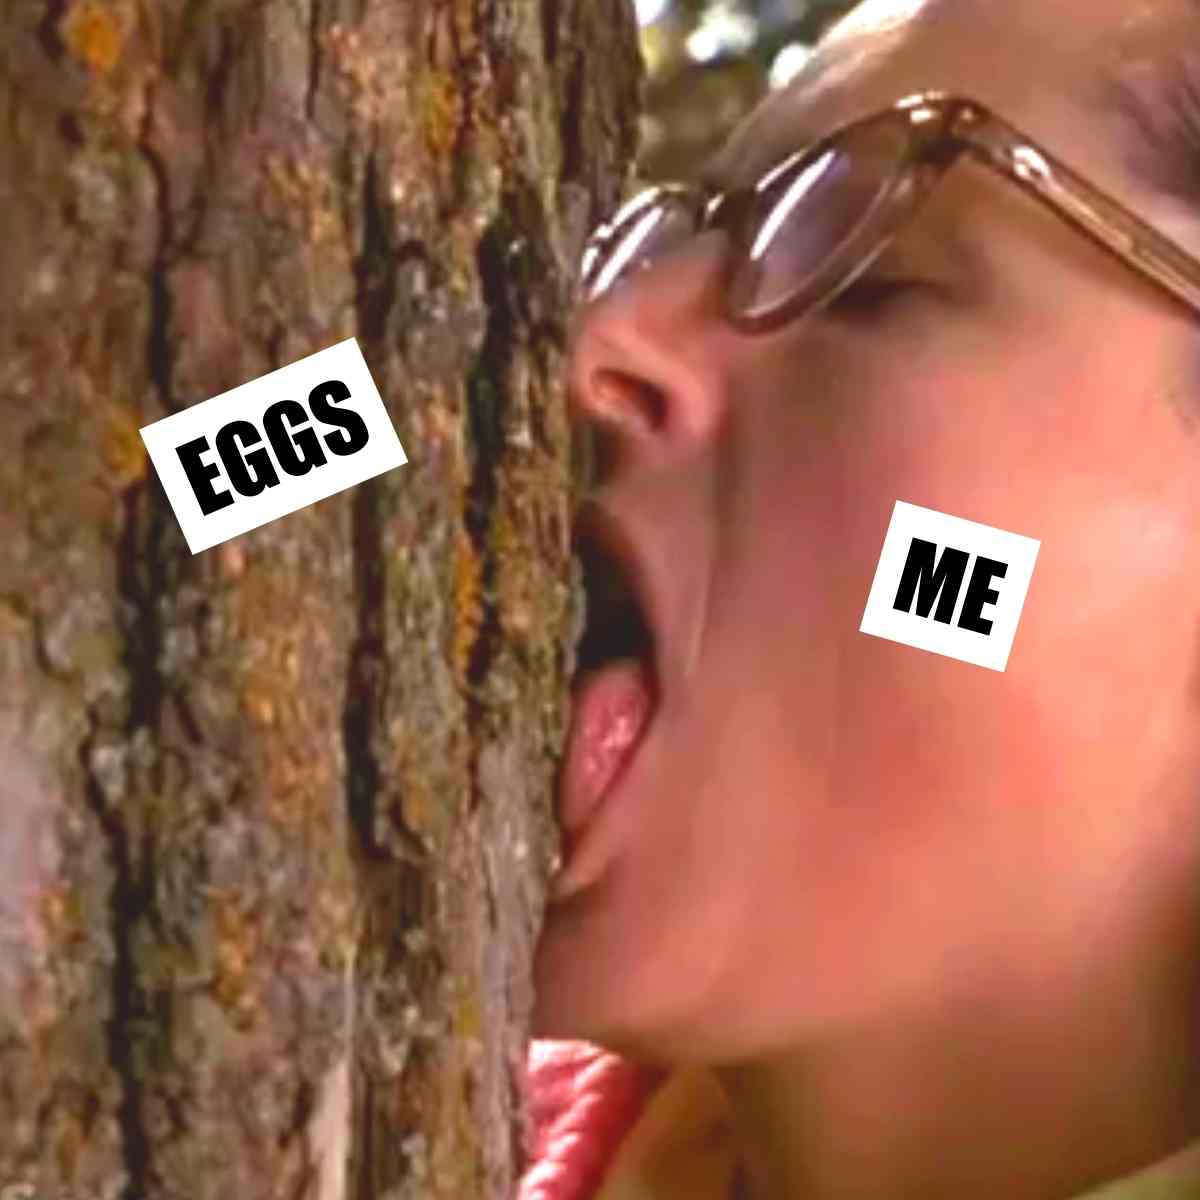 egg lover meme